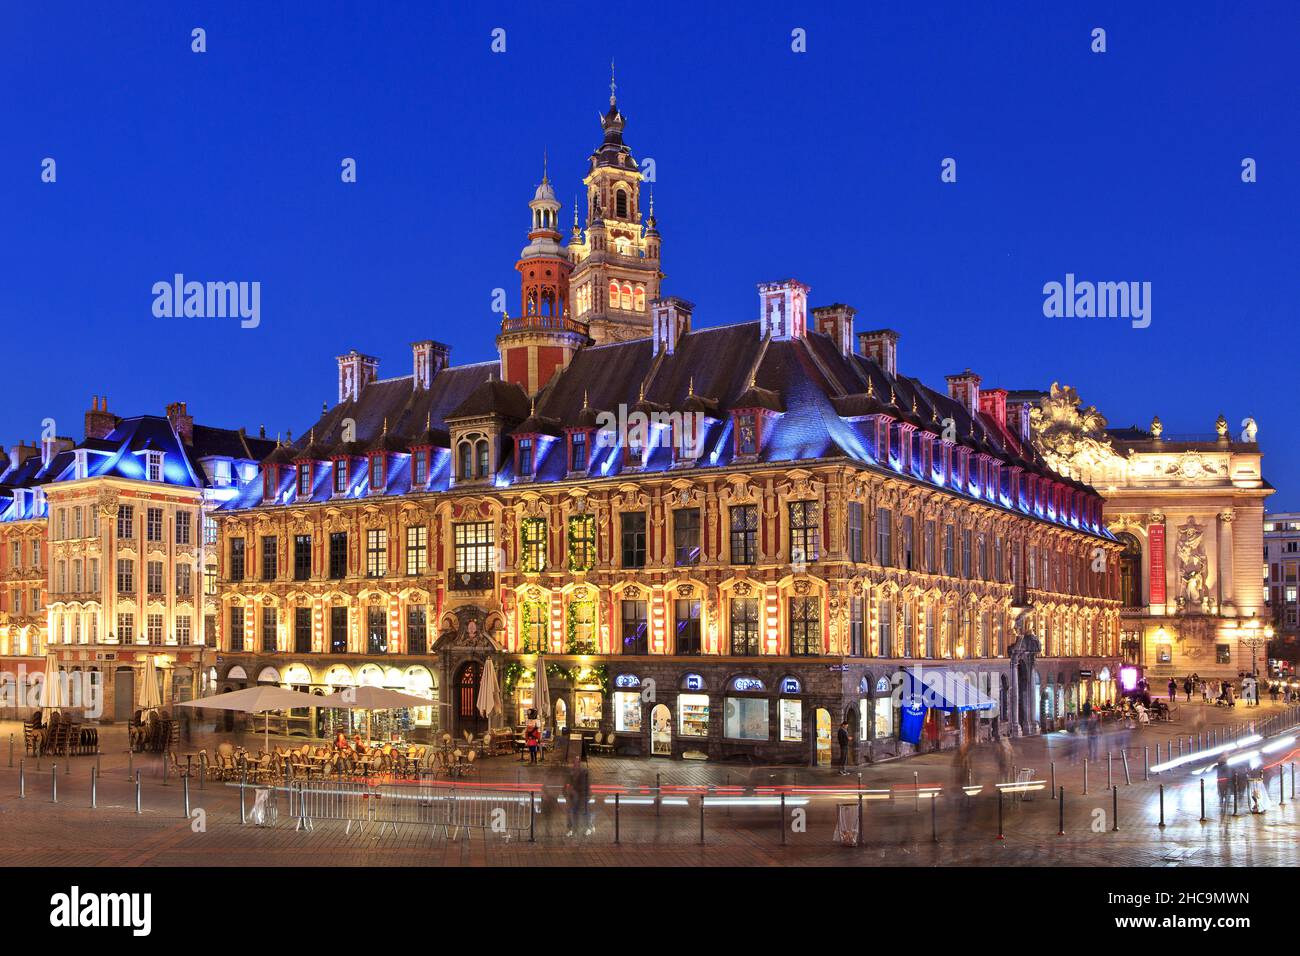 L'ancien marché boursier (1653), le beffroi de la Chambre de Commerce (1910-1921) et l'Opéra (1923) à Lille (Nord), France Banque D'Images